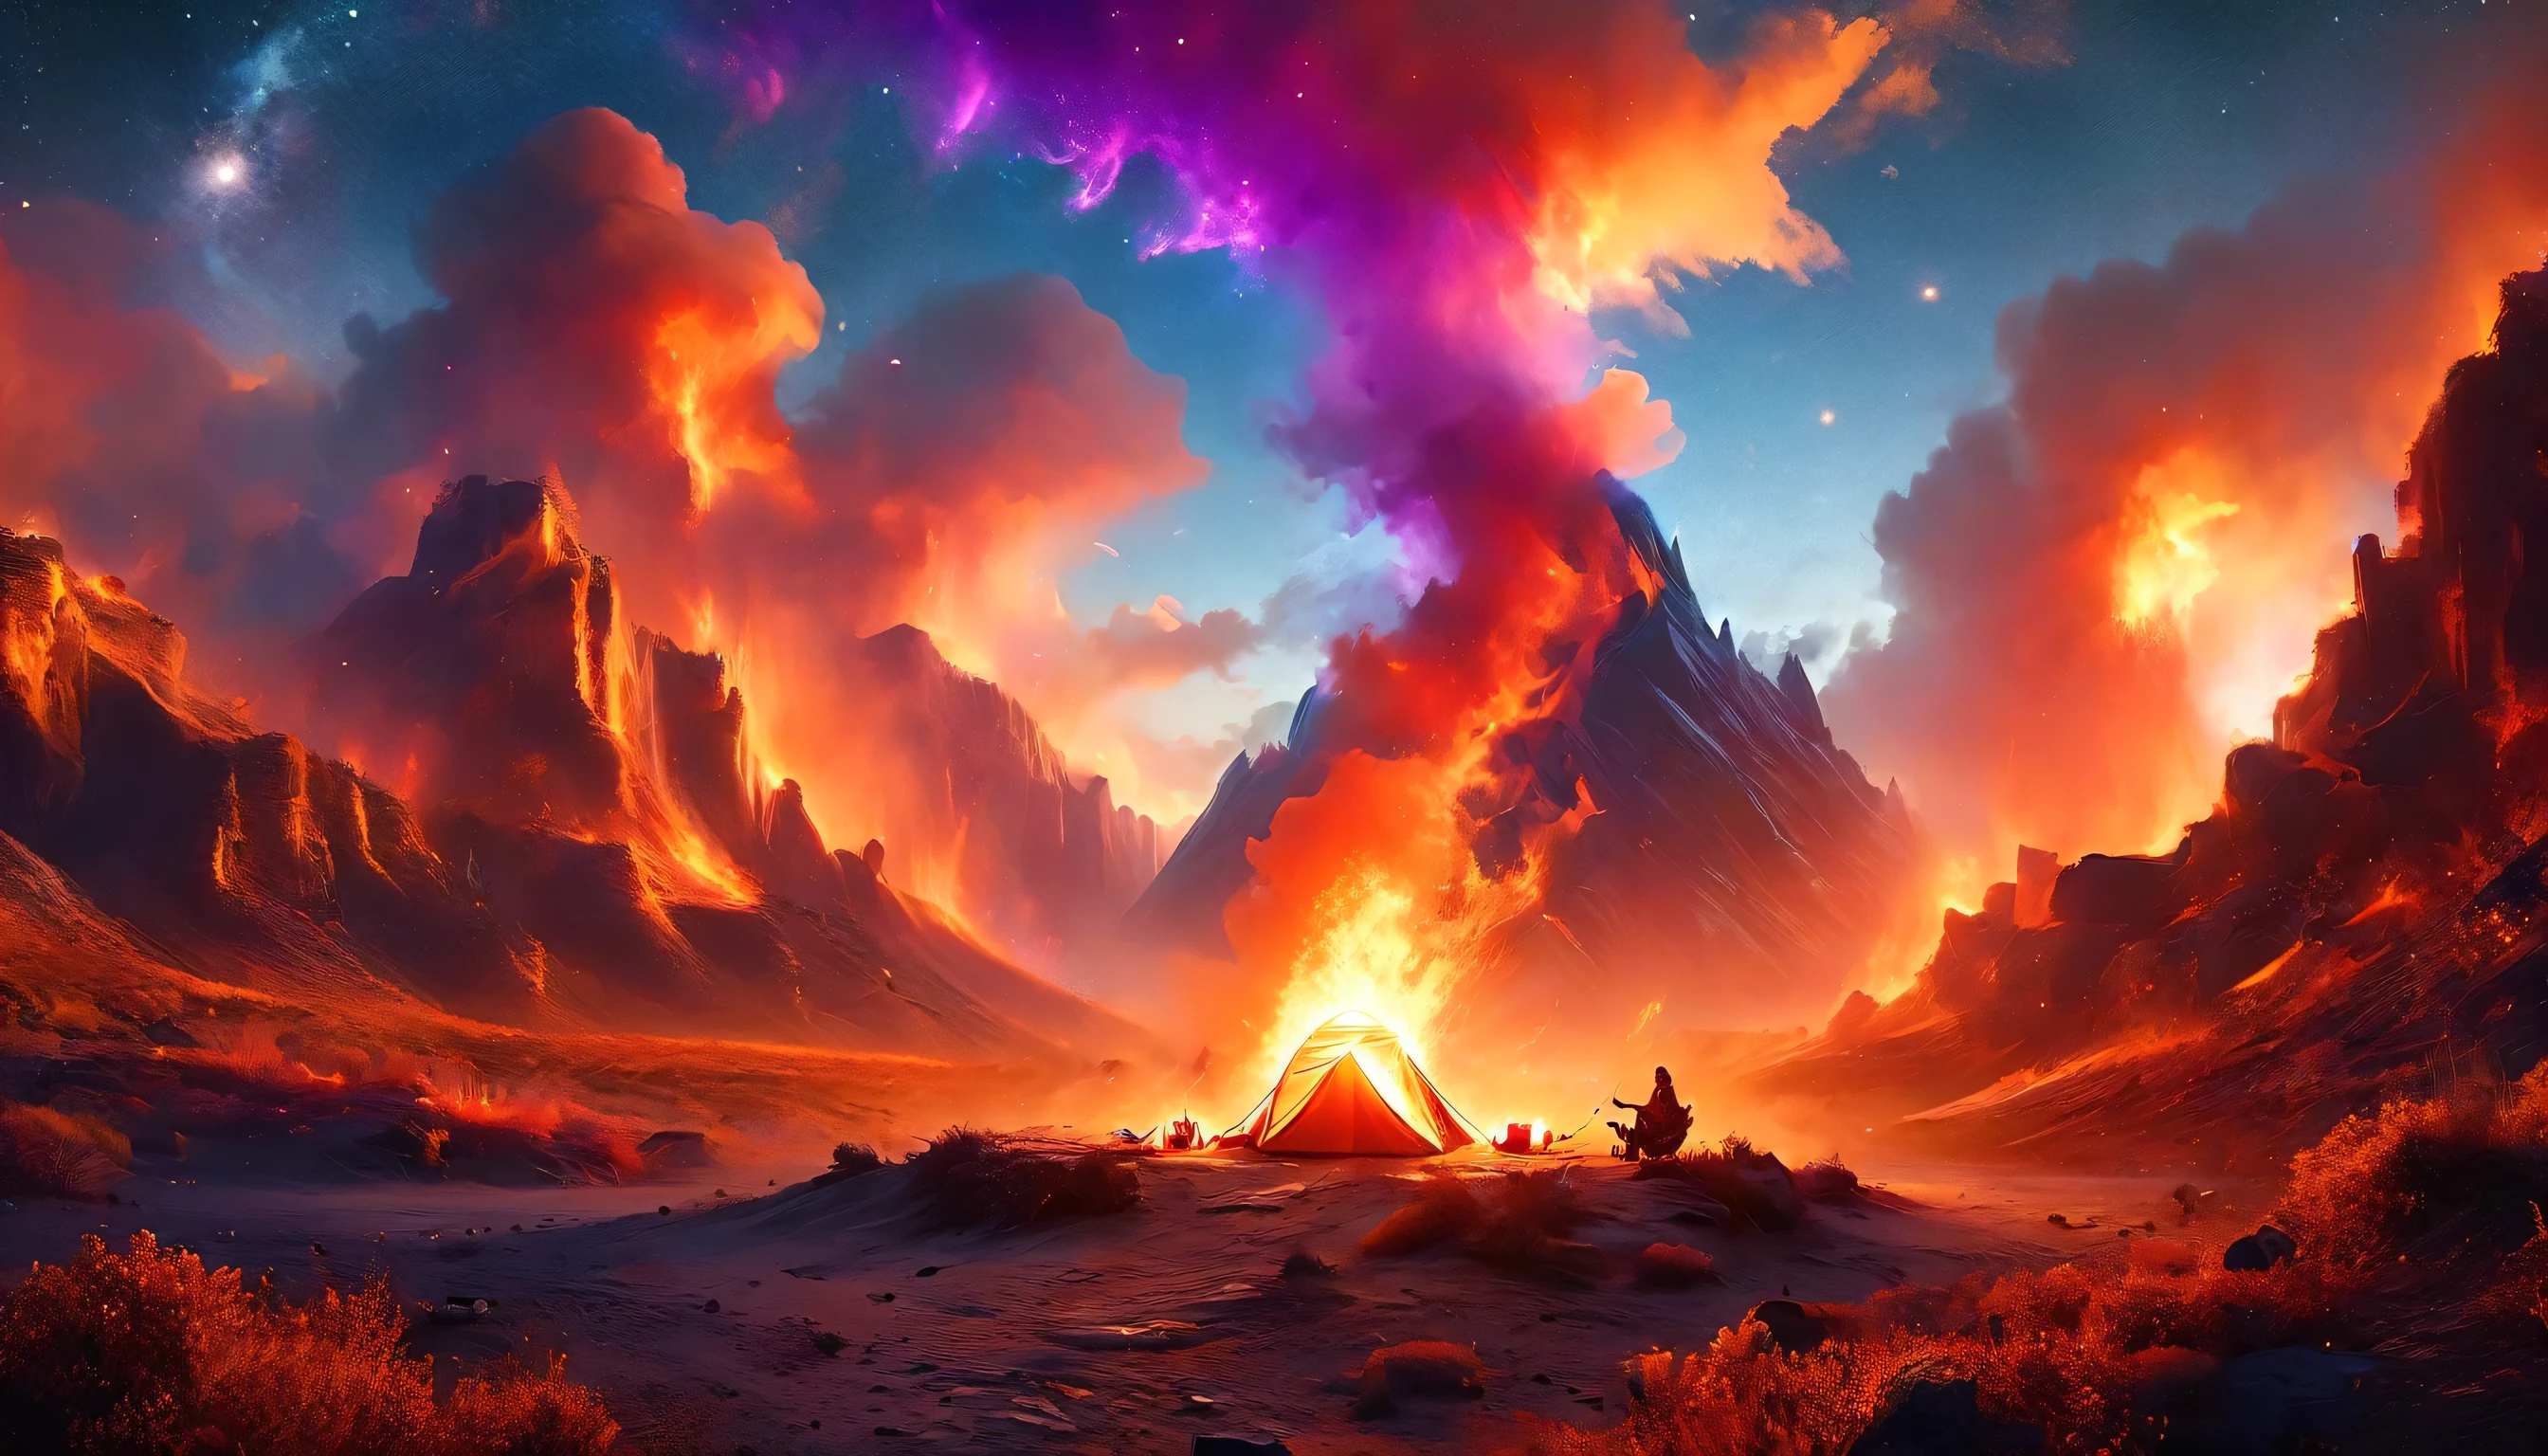 arabisch, ein Bild von einem Campingplatz (Zelt: 1.2) und Klein (Lagerfeuer: 1.3), auf einem einsamen Berggipfel, sein Sonnenuntergang der Himmel sind in verschiedenen Schattierungen von  (Rot: 1.1), (orange: 1.1), (azure: 1.1) (lila:1.1) aus dem Feuerlager steigt Rauch auf, Es gibt einen herrlichen Blick auf die Wüstenschlucht und die Schluchten, am Horizont sind spärliche Bäume, Es ist eine Zeit der Gelassenheit, Frieden, und Entspannung, beste Qualität, 16K,  Fotorealismus, Mit dem National Geographic Award ausgezeichnetes Fotoshooting, Ultraweite Aufnahme, RagingNebula, Abonnieren